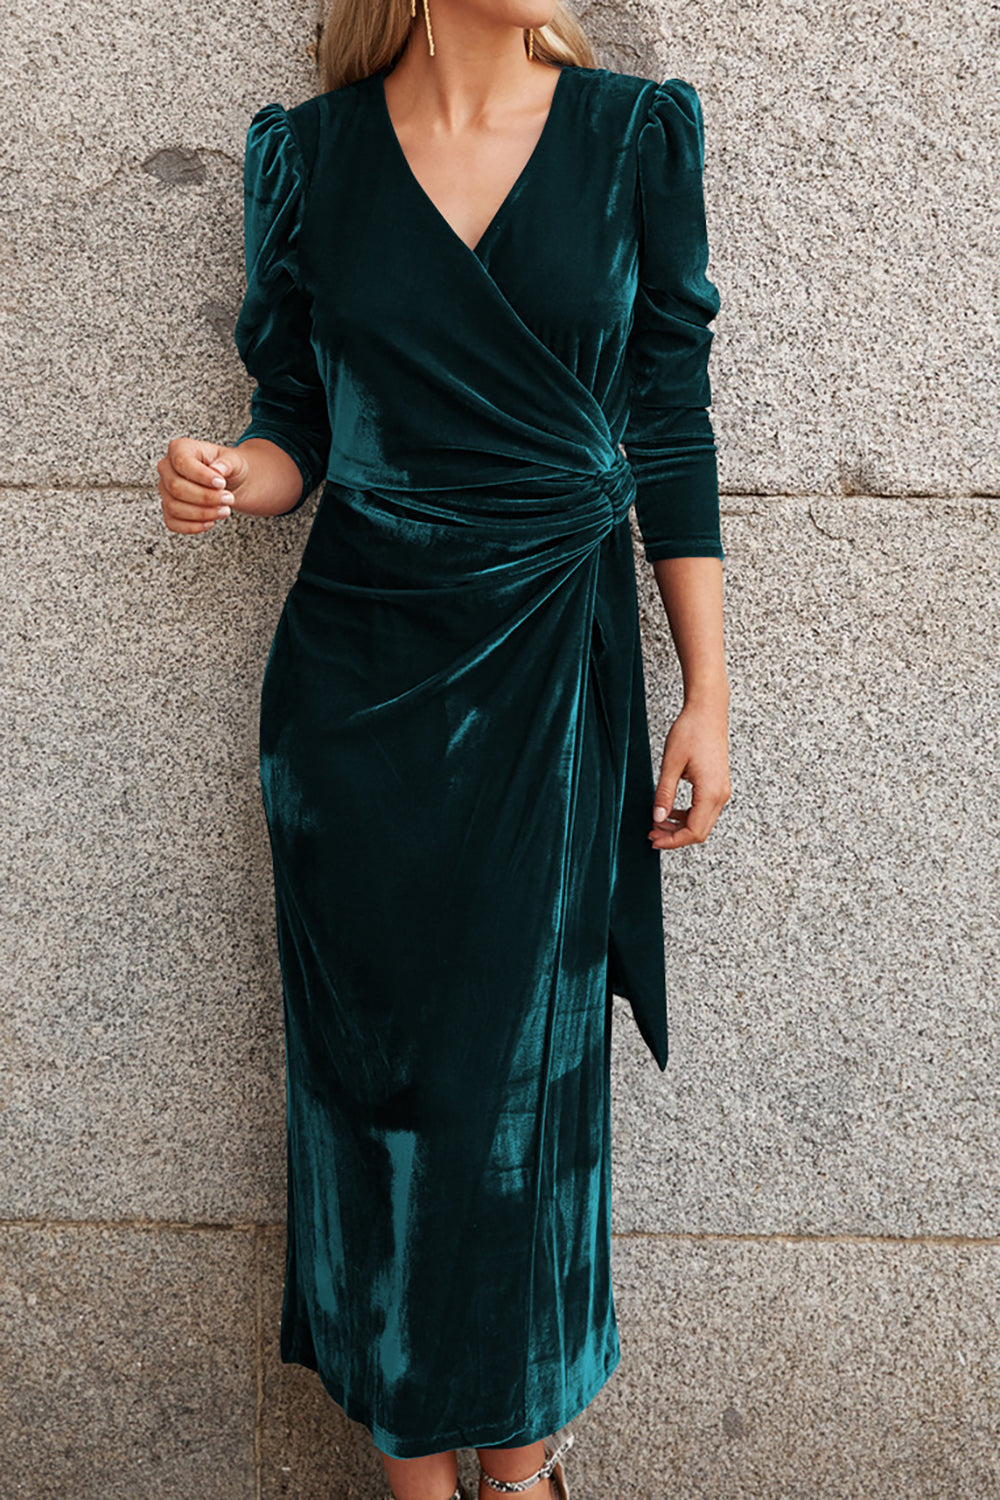 Elegant Dark Green V Neck Velvet Evening Gown Dress With Long Sleeves